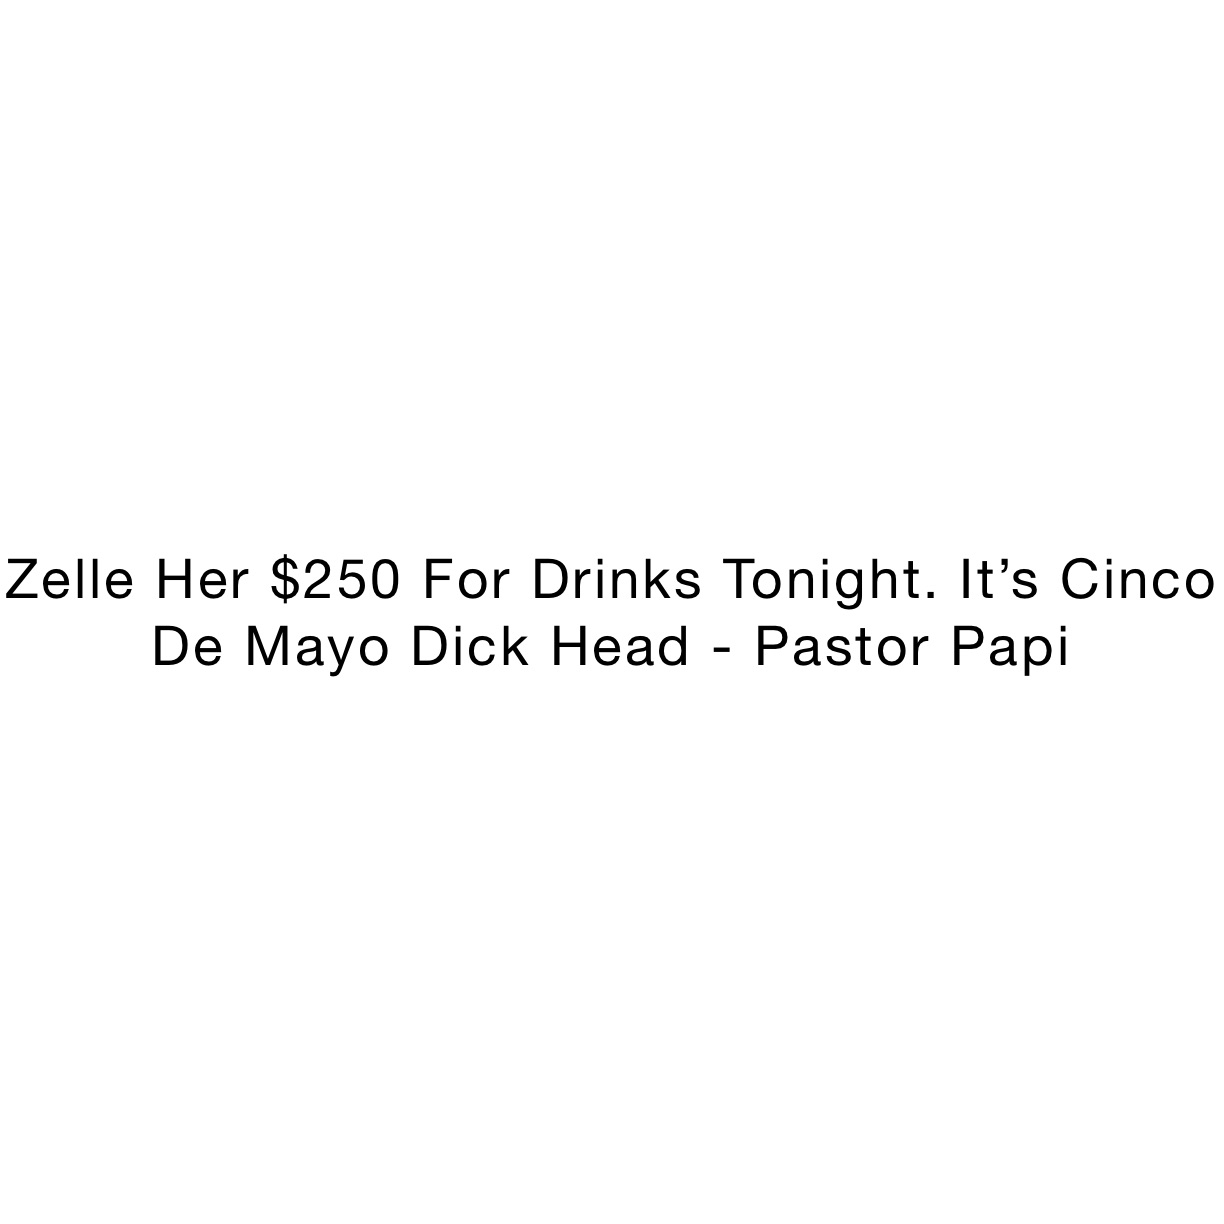 Zelle Her $250 For Drinks Tonight. It’s Cinco De Mayo Dick Head - Pastor Papi